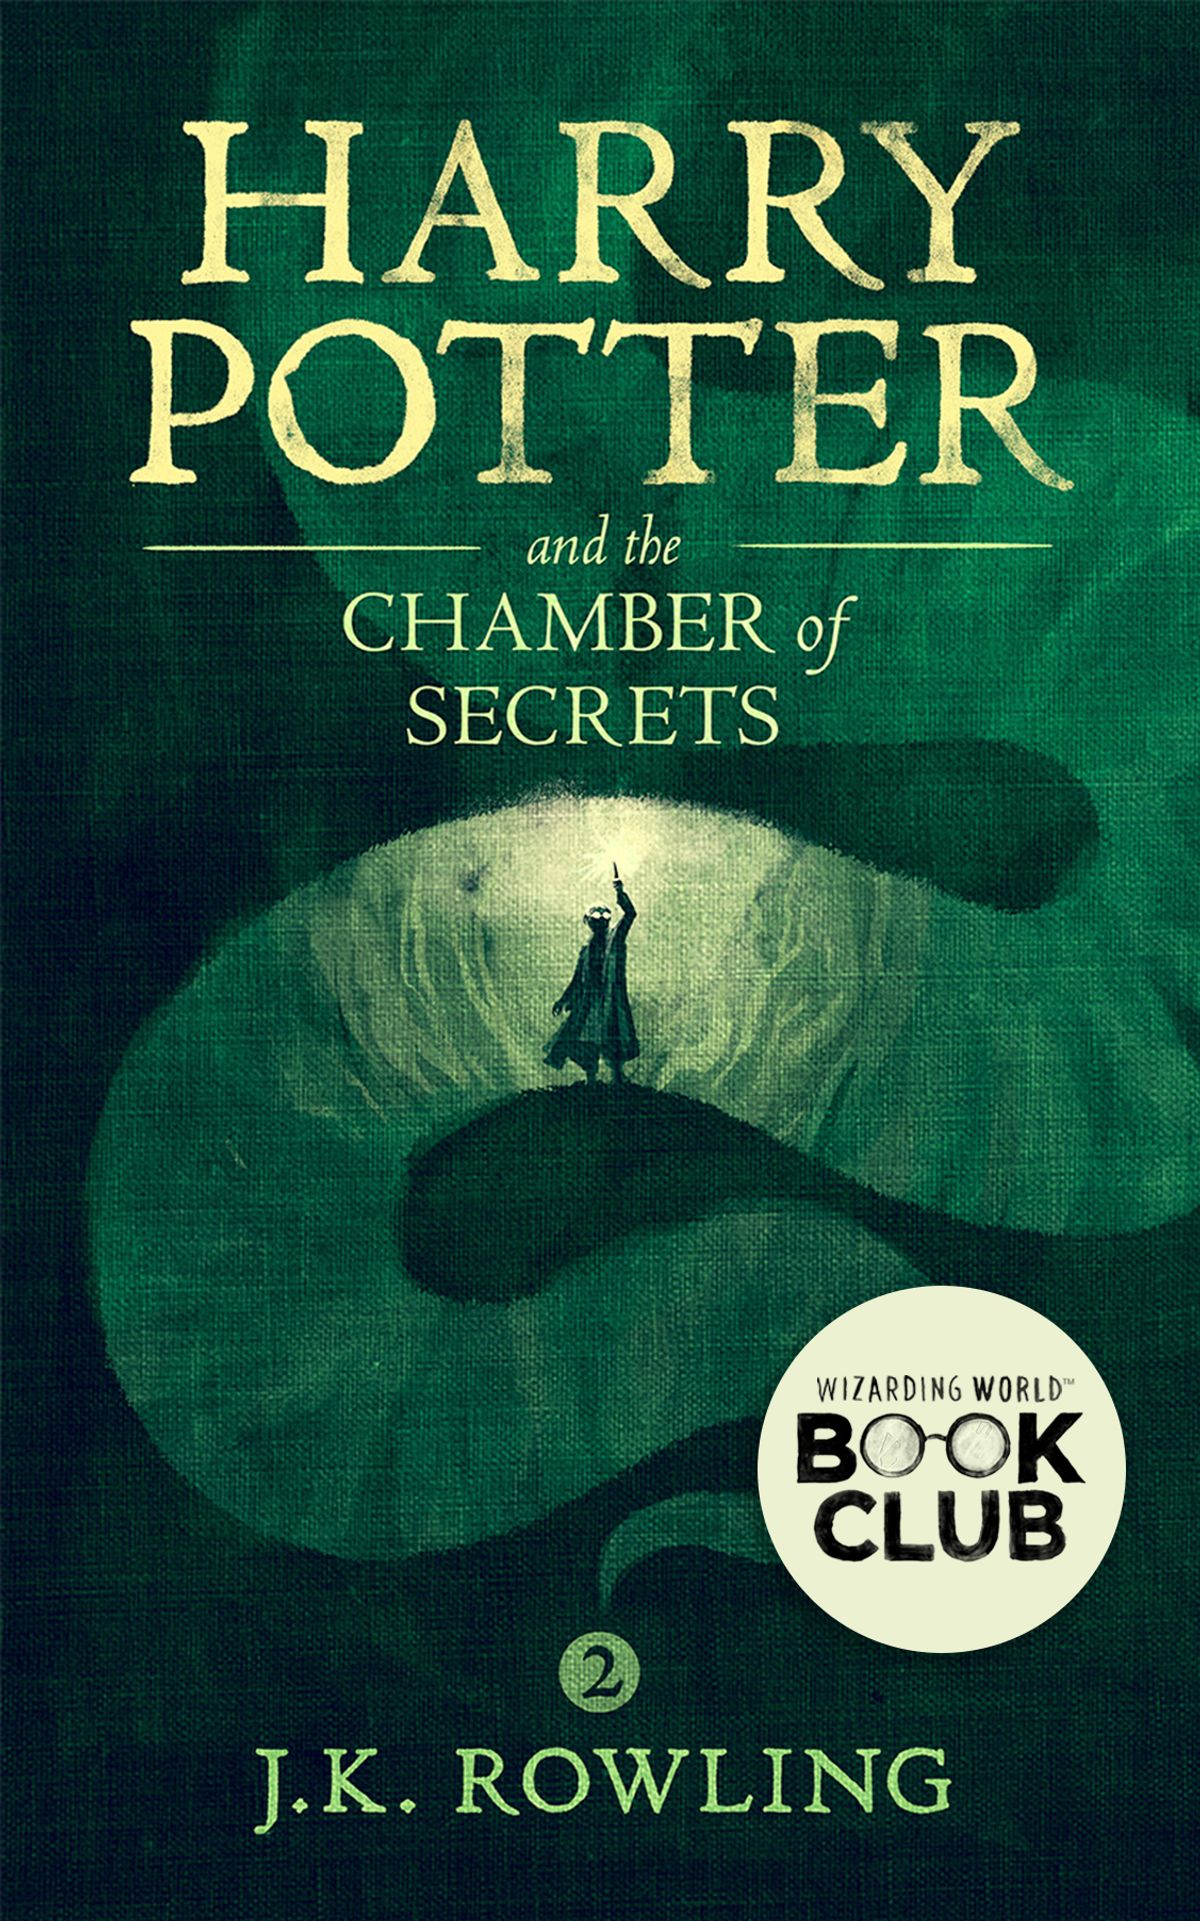 Harry Potter Novel Pdf Free Download - eldernew